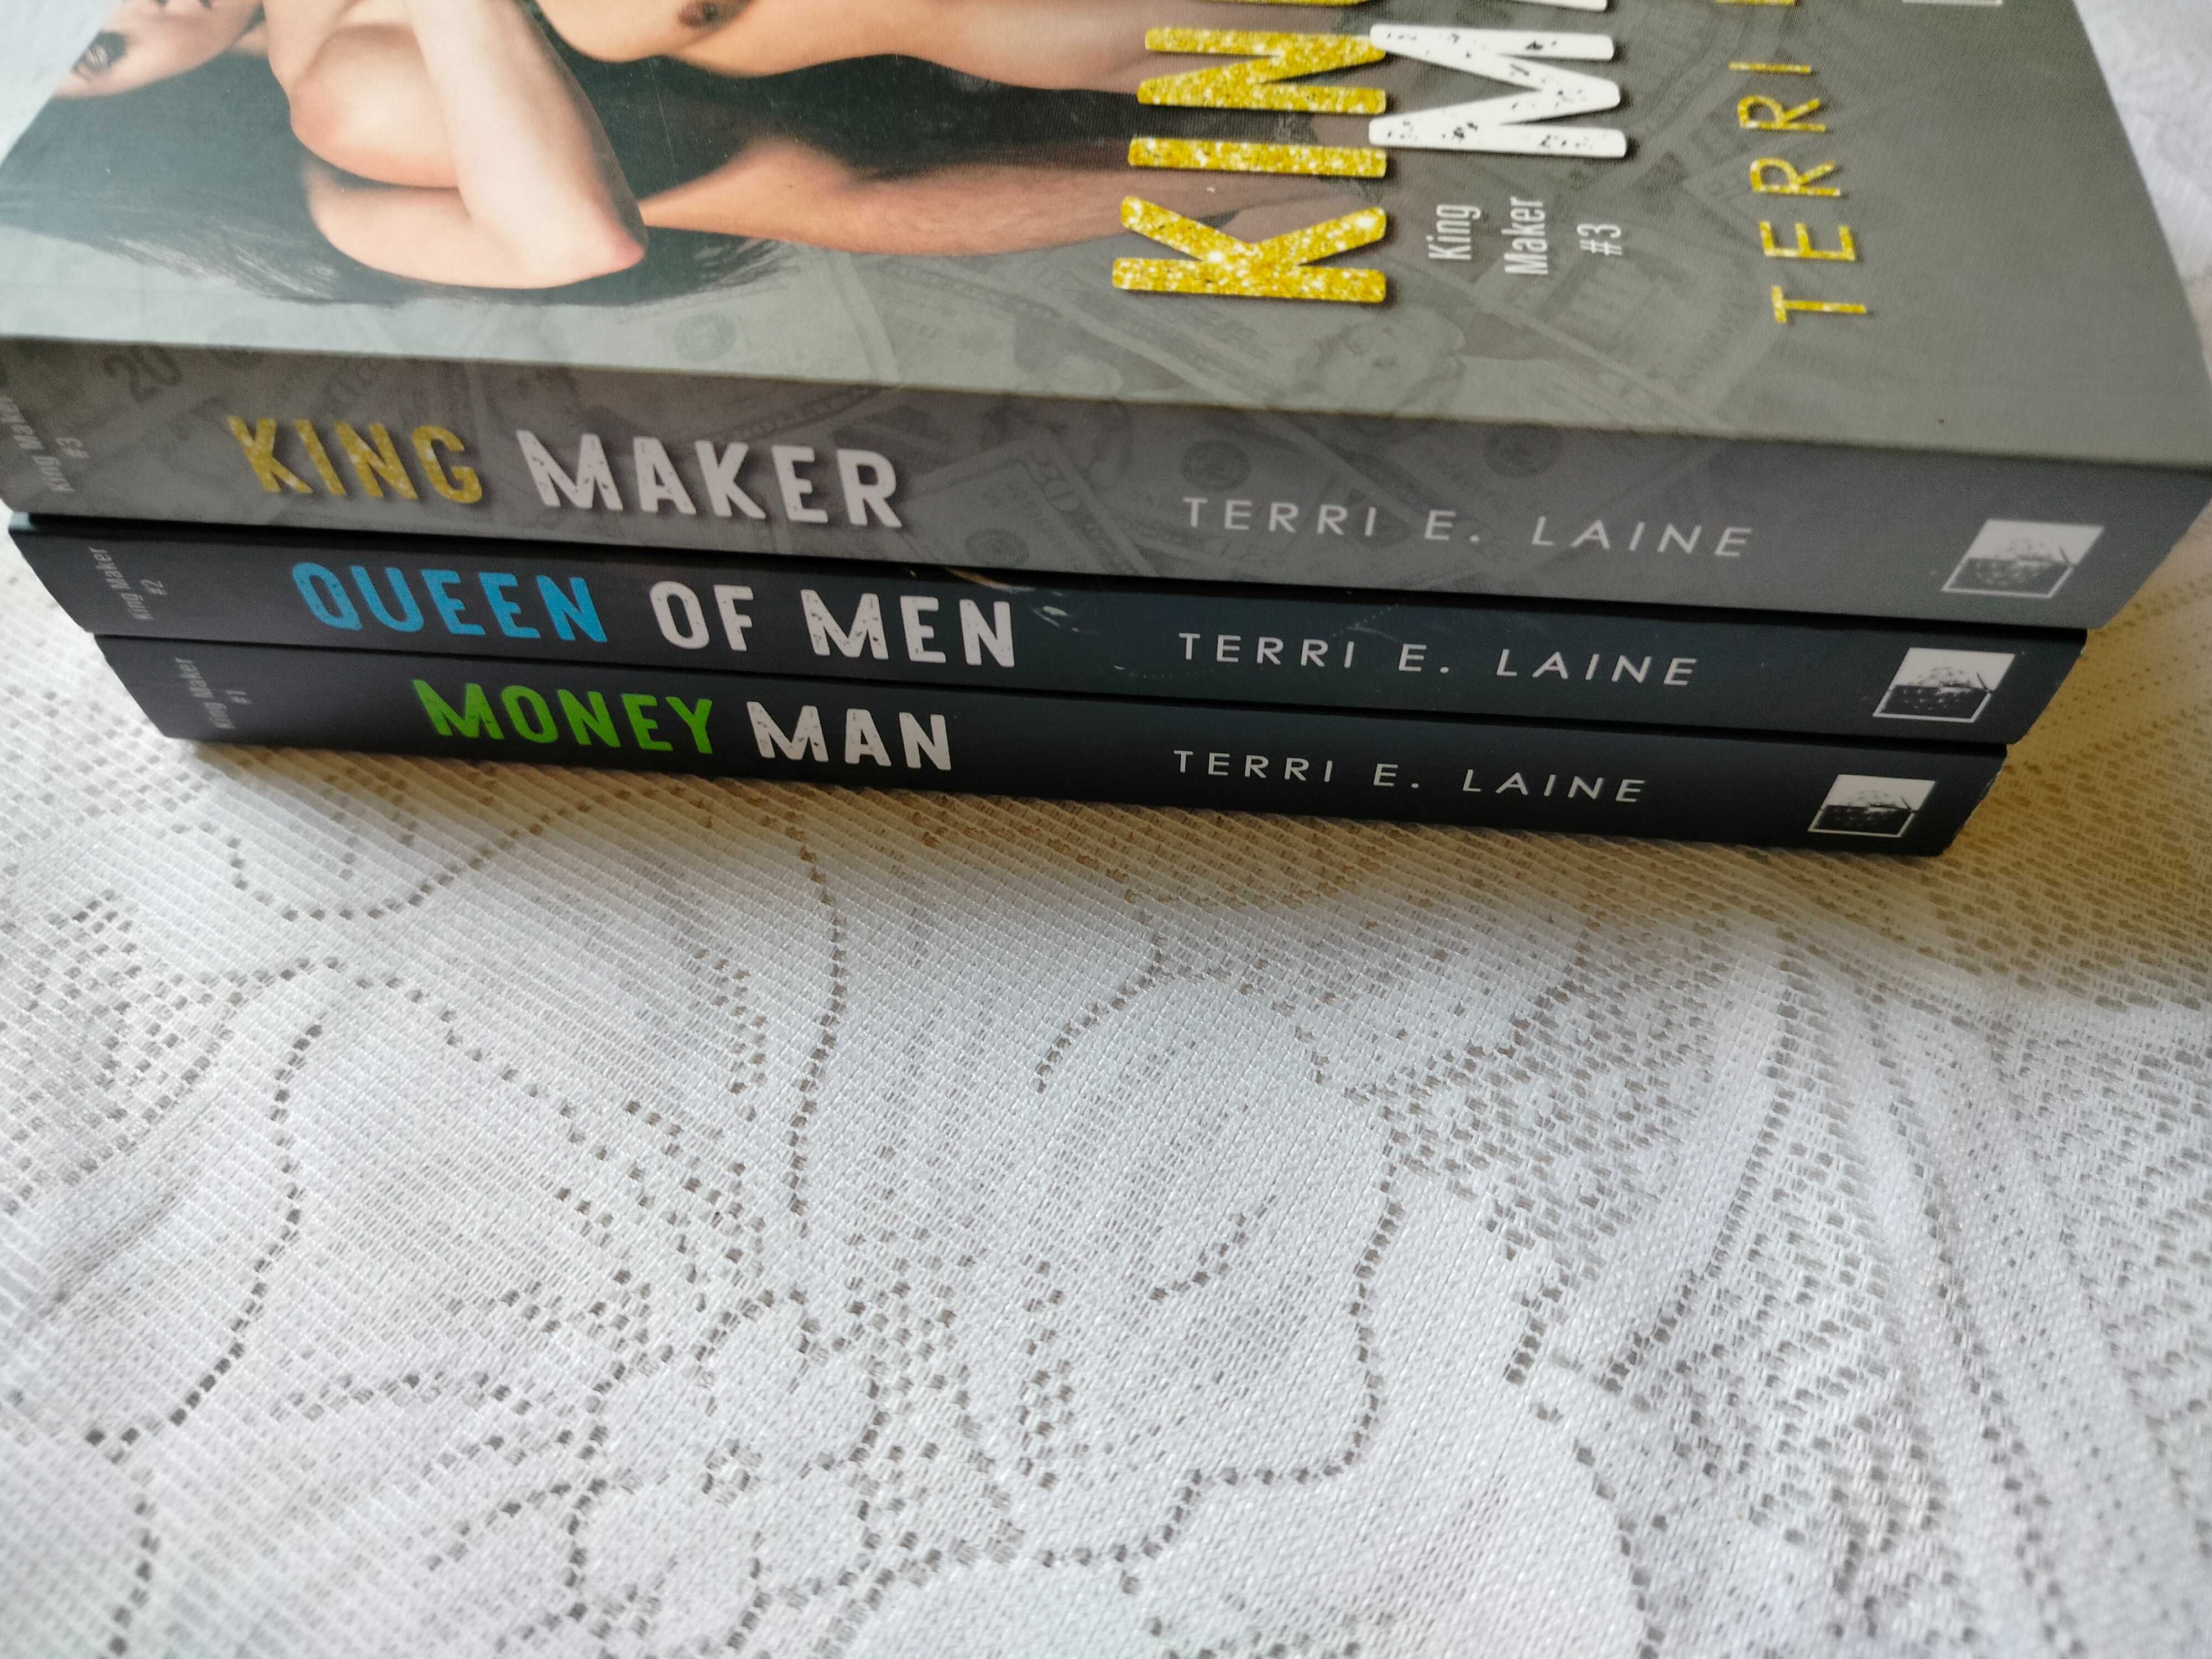 książki Money Man,Queen of Men i King Maker Terri E. Laine